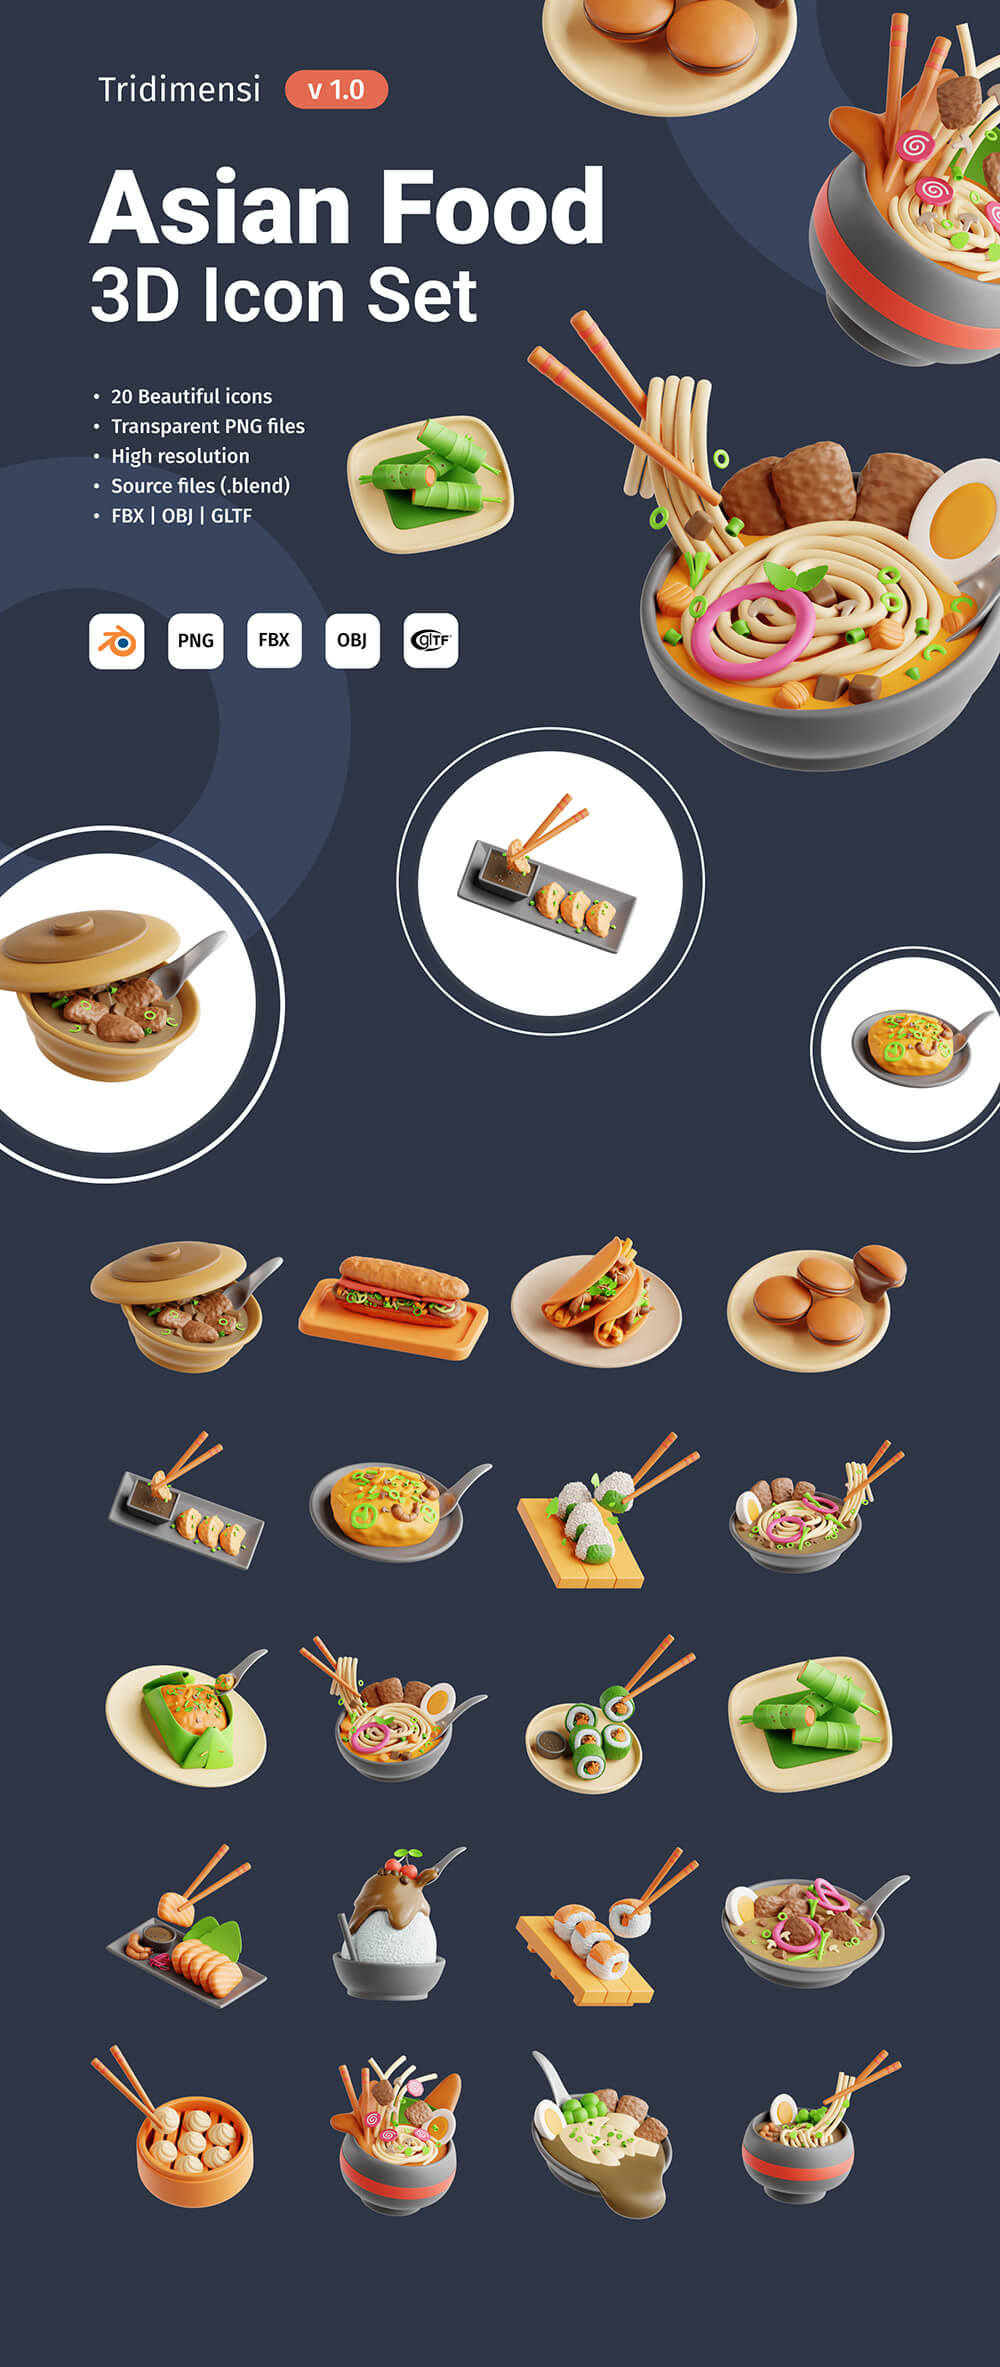 3D亚洲美食食品图标 图标素材 第1张